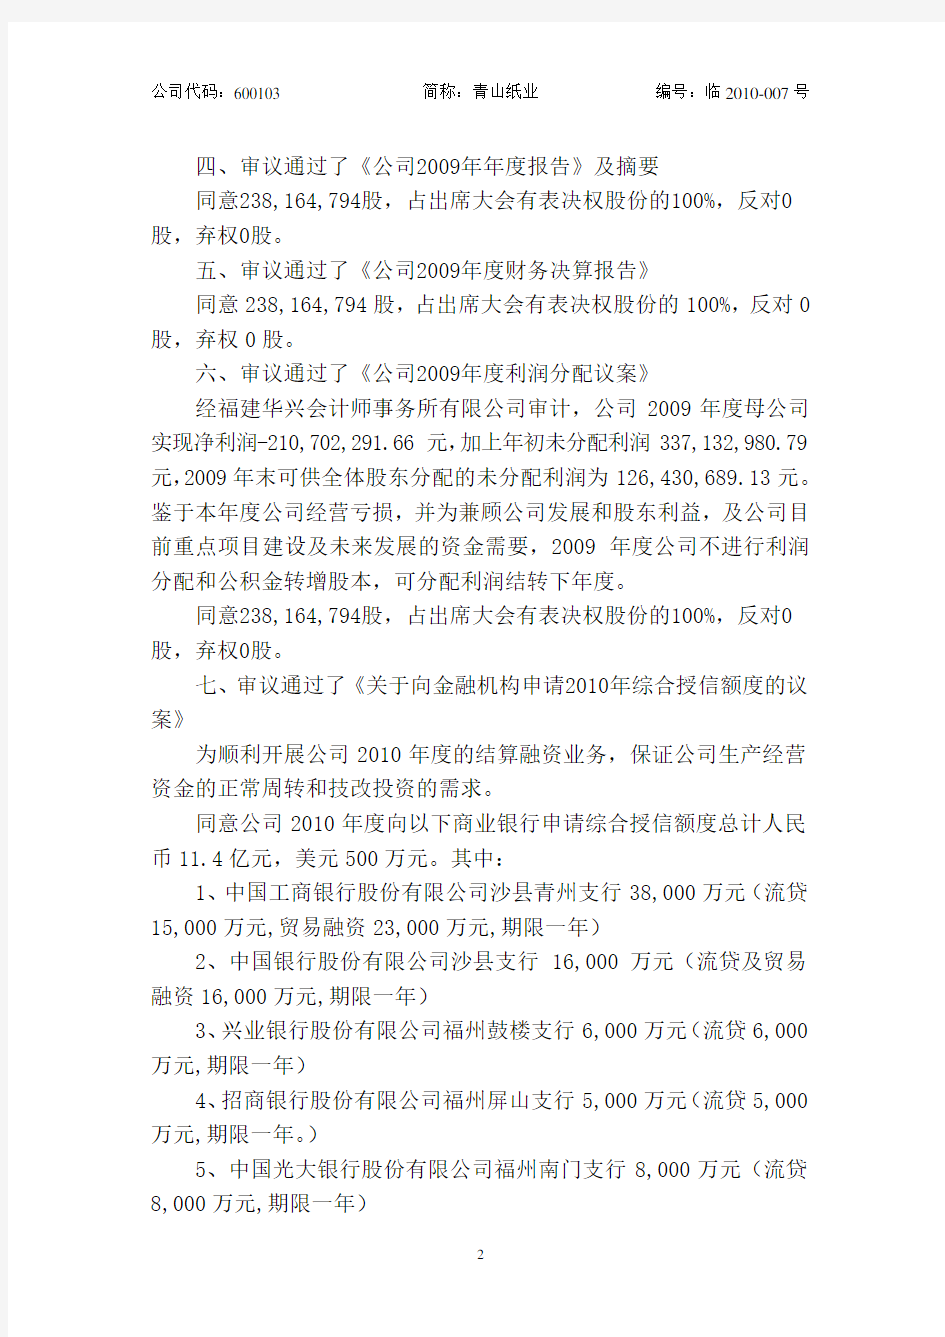 福建省青山纸业股份有限公司2009年度股东大会决议公告